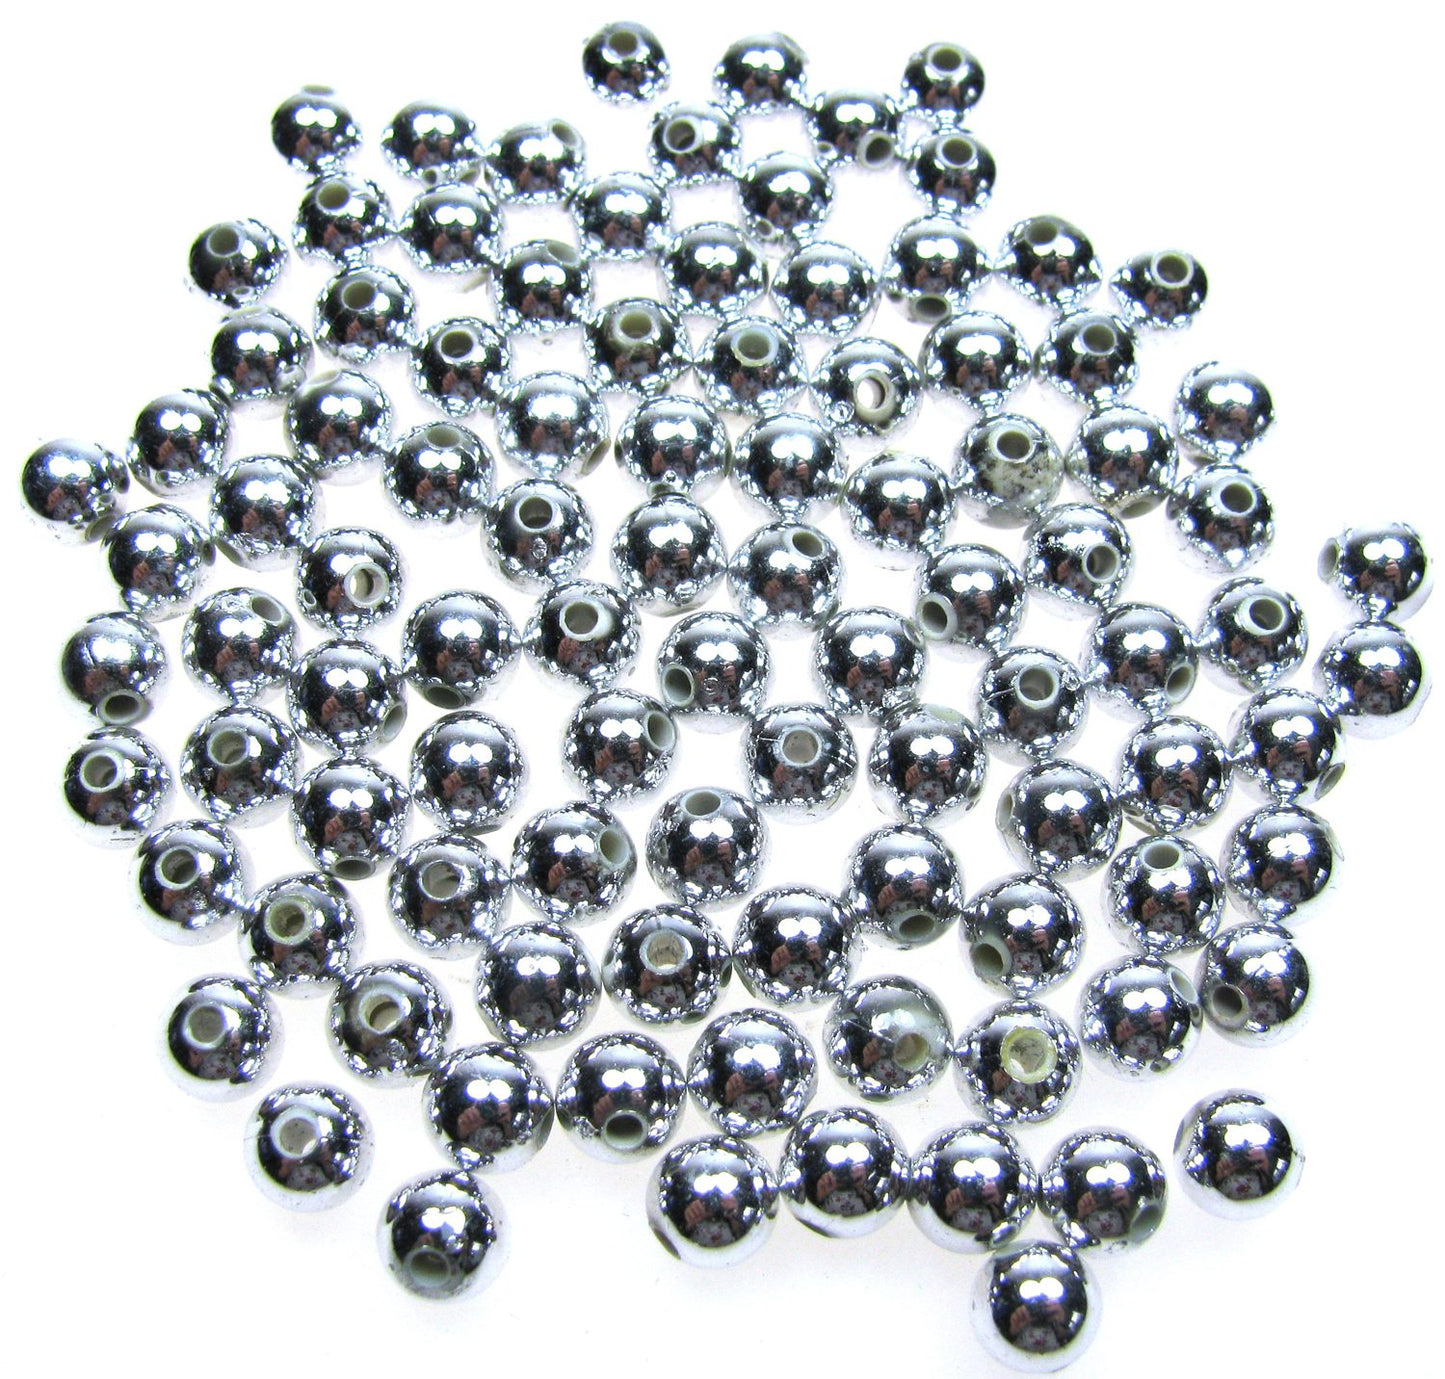 100 Wachsperlen 6 mm, Farbe silber, Hochzeit Deko, Perlen basteln, fädeln